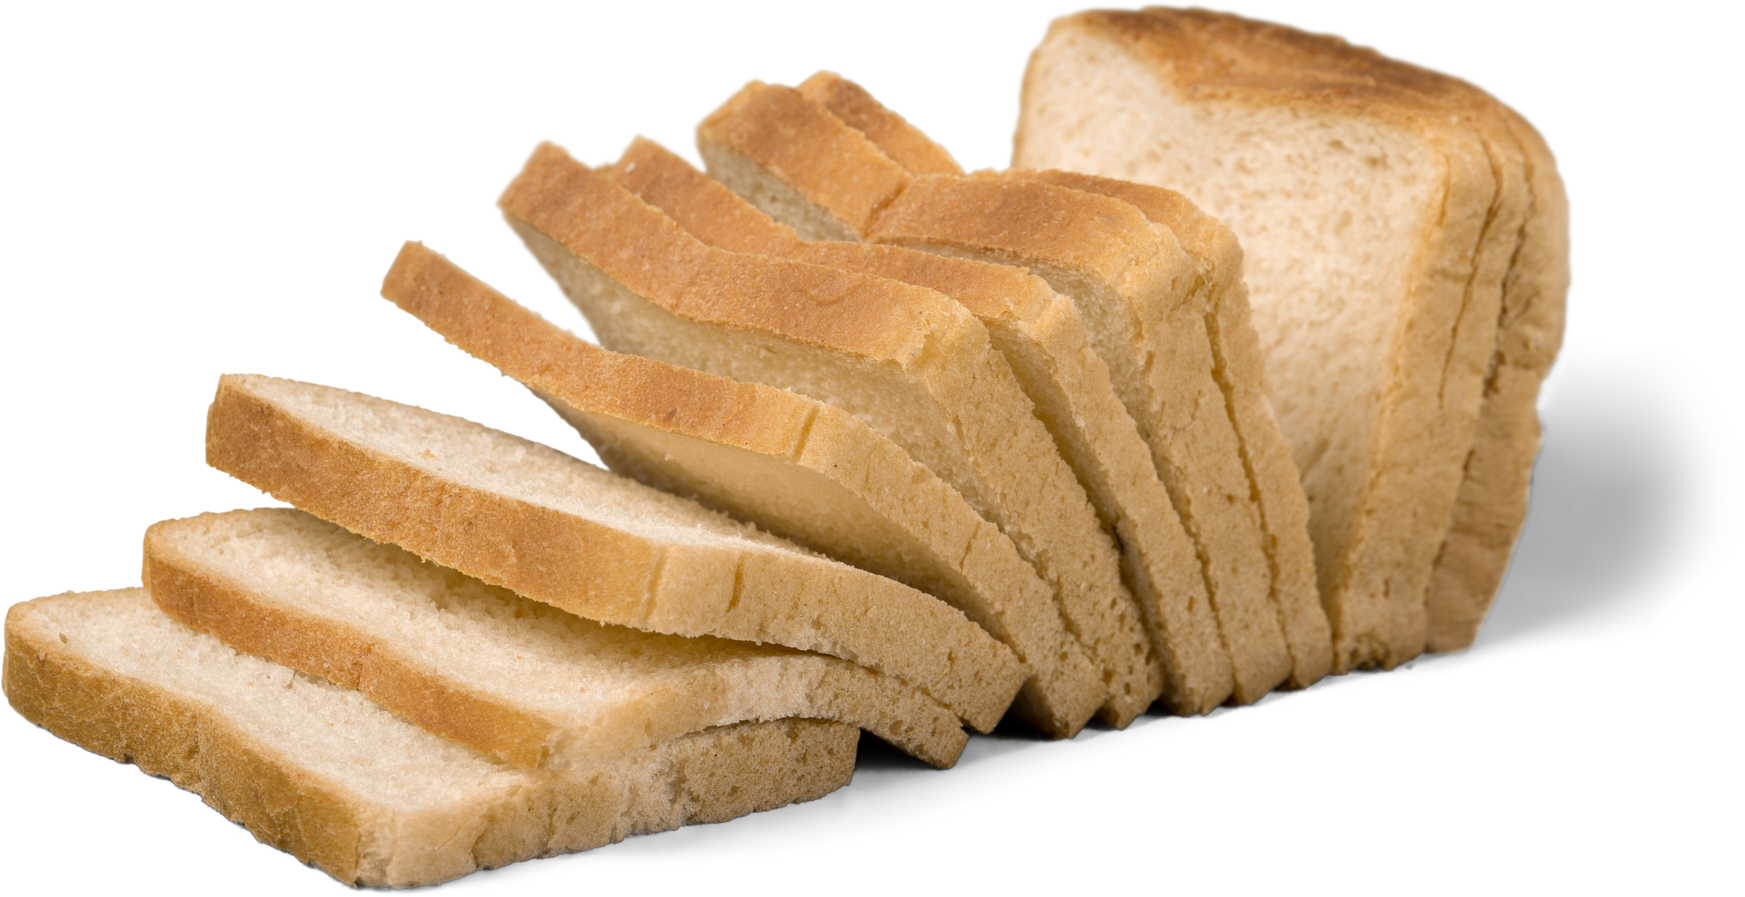 Sliced Bread Loaf